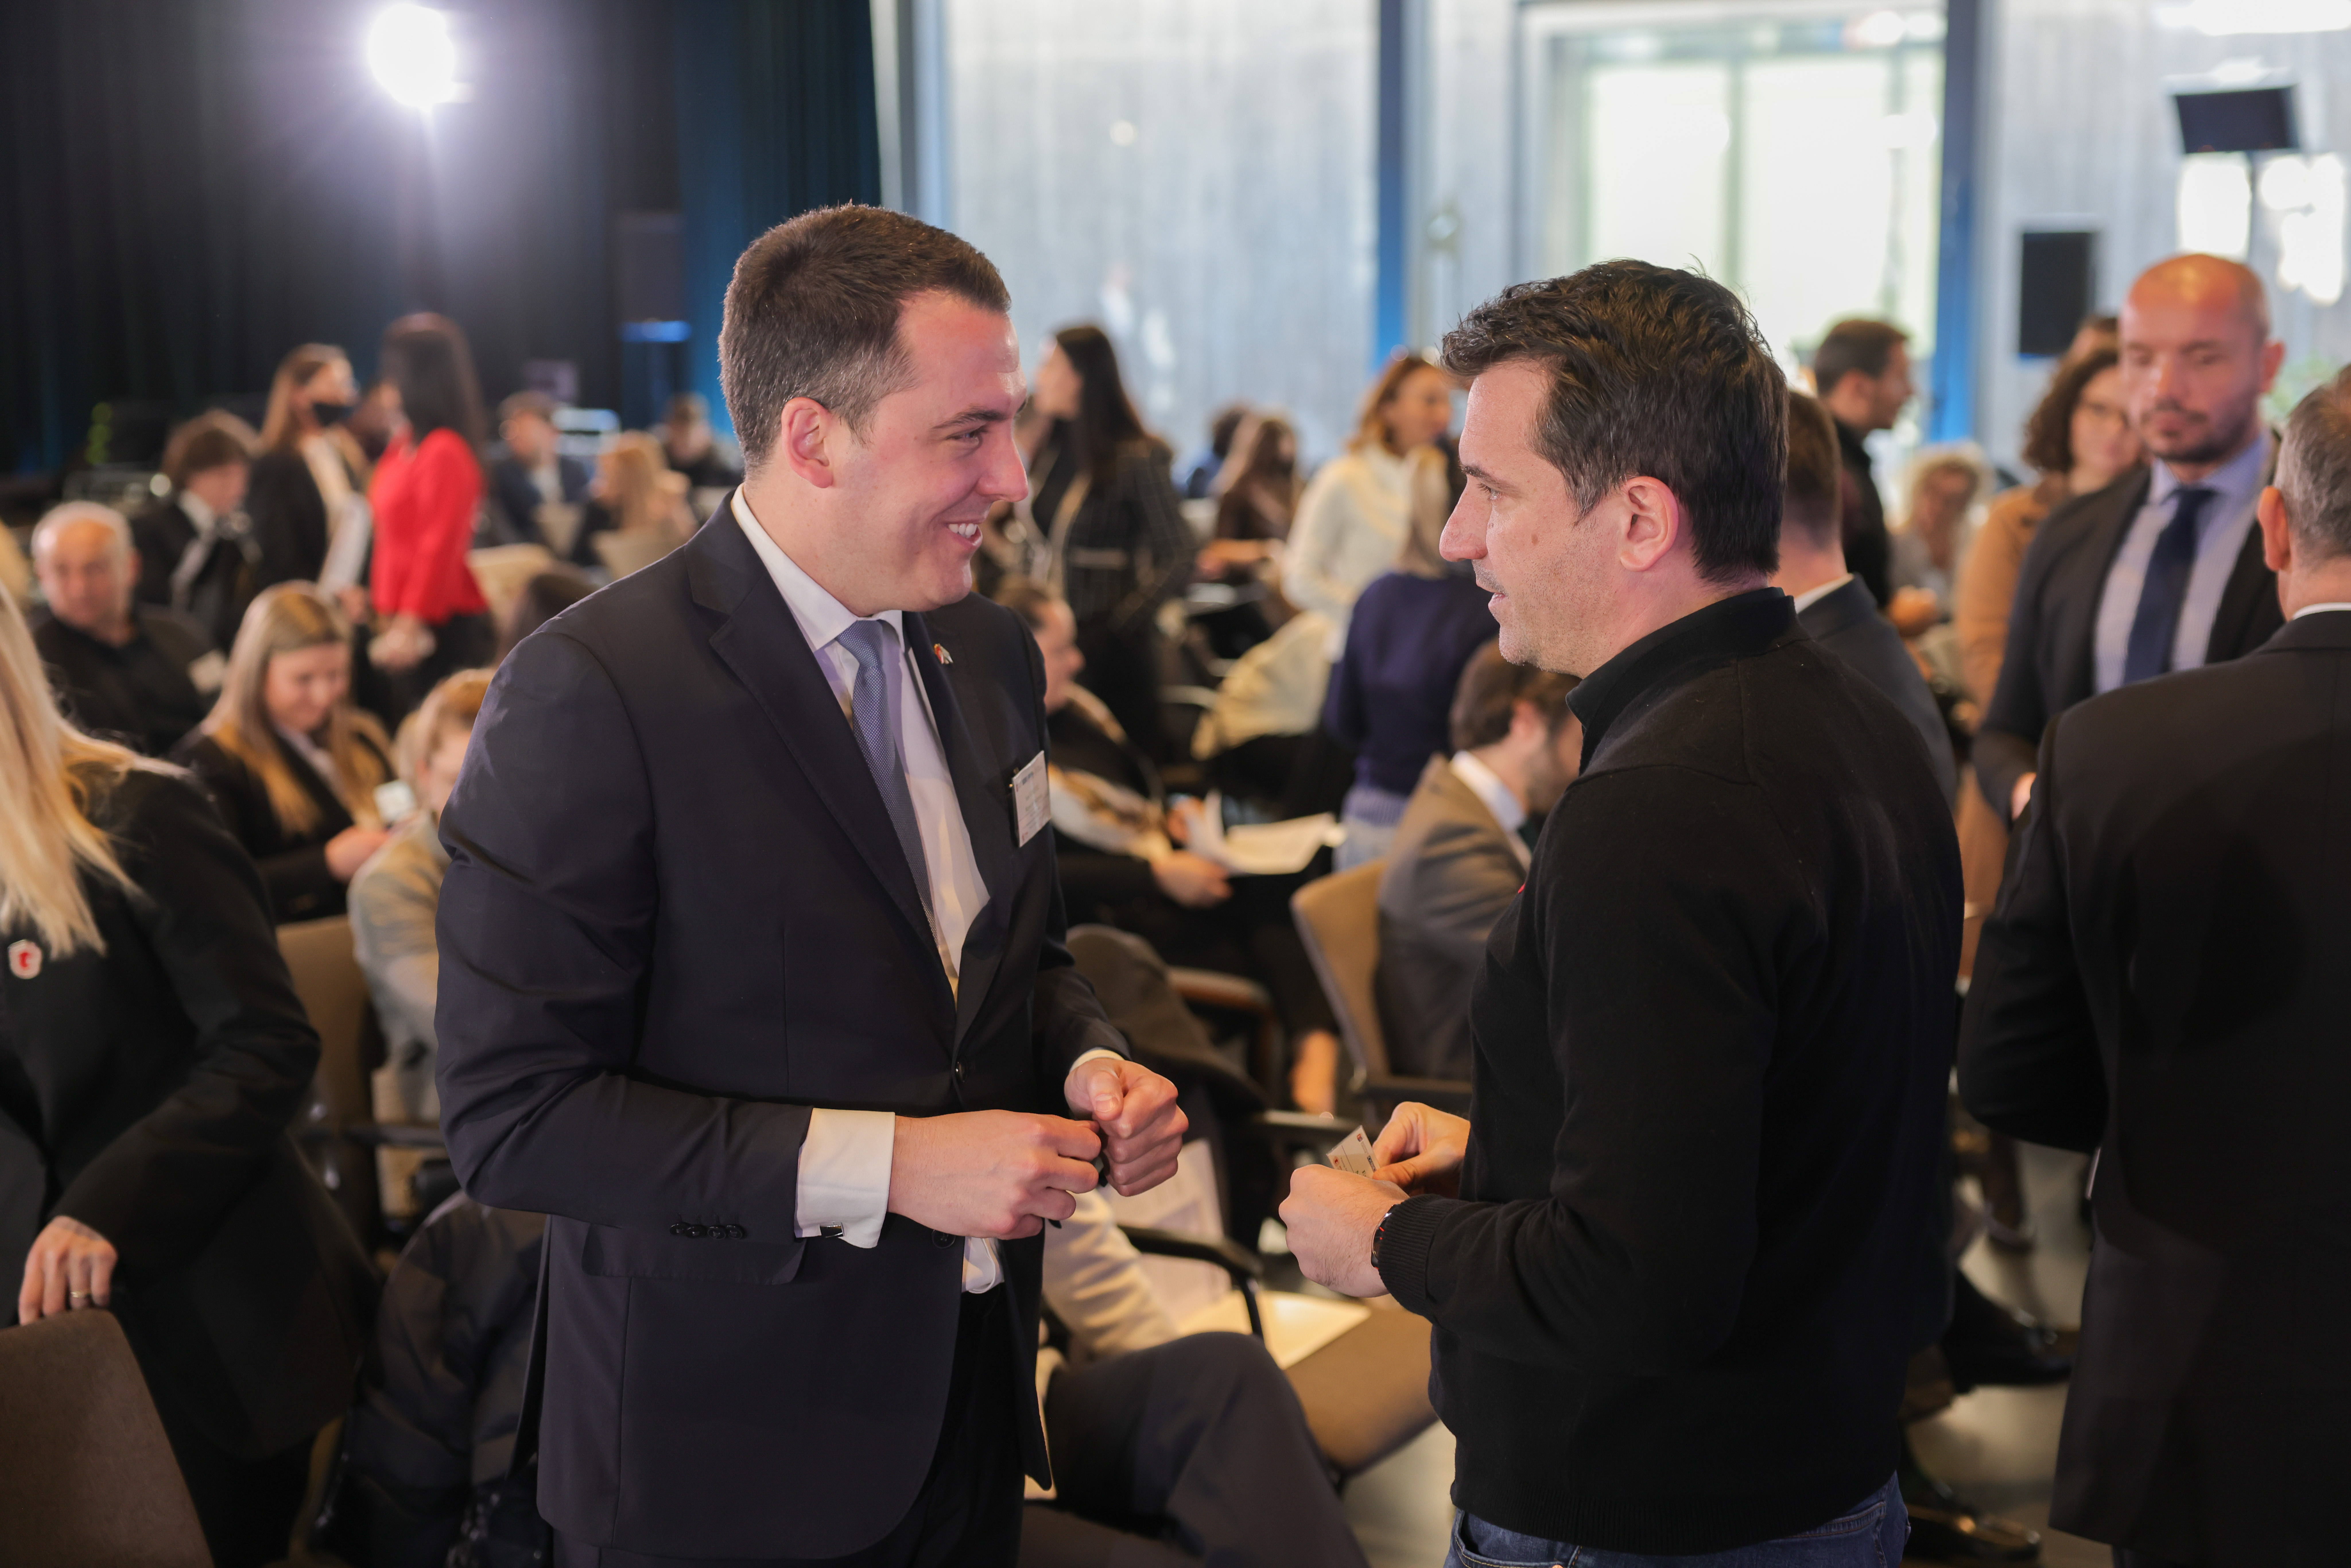 Vuković na konferenciji u Tirani; Predstavljeni potencijali i značaj digitalne ekonomije